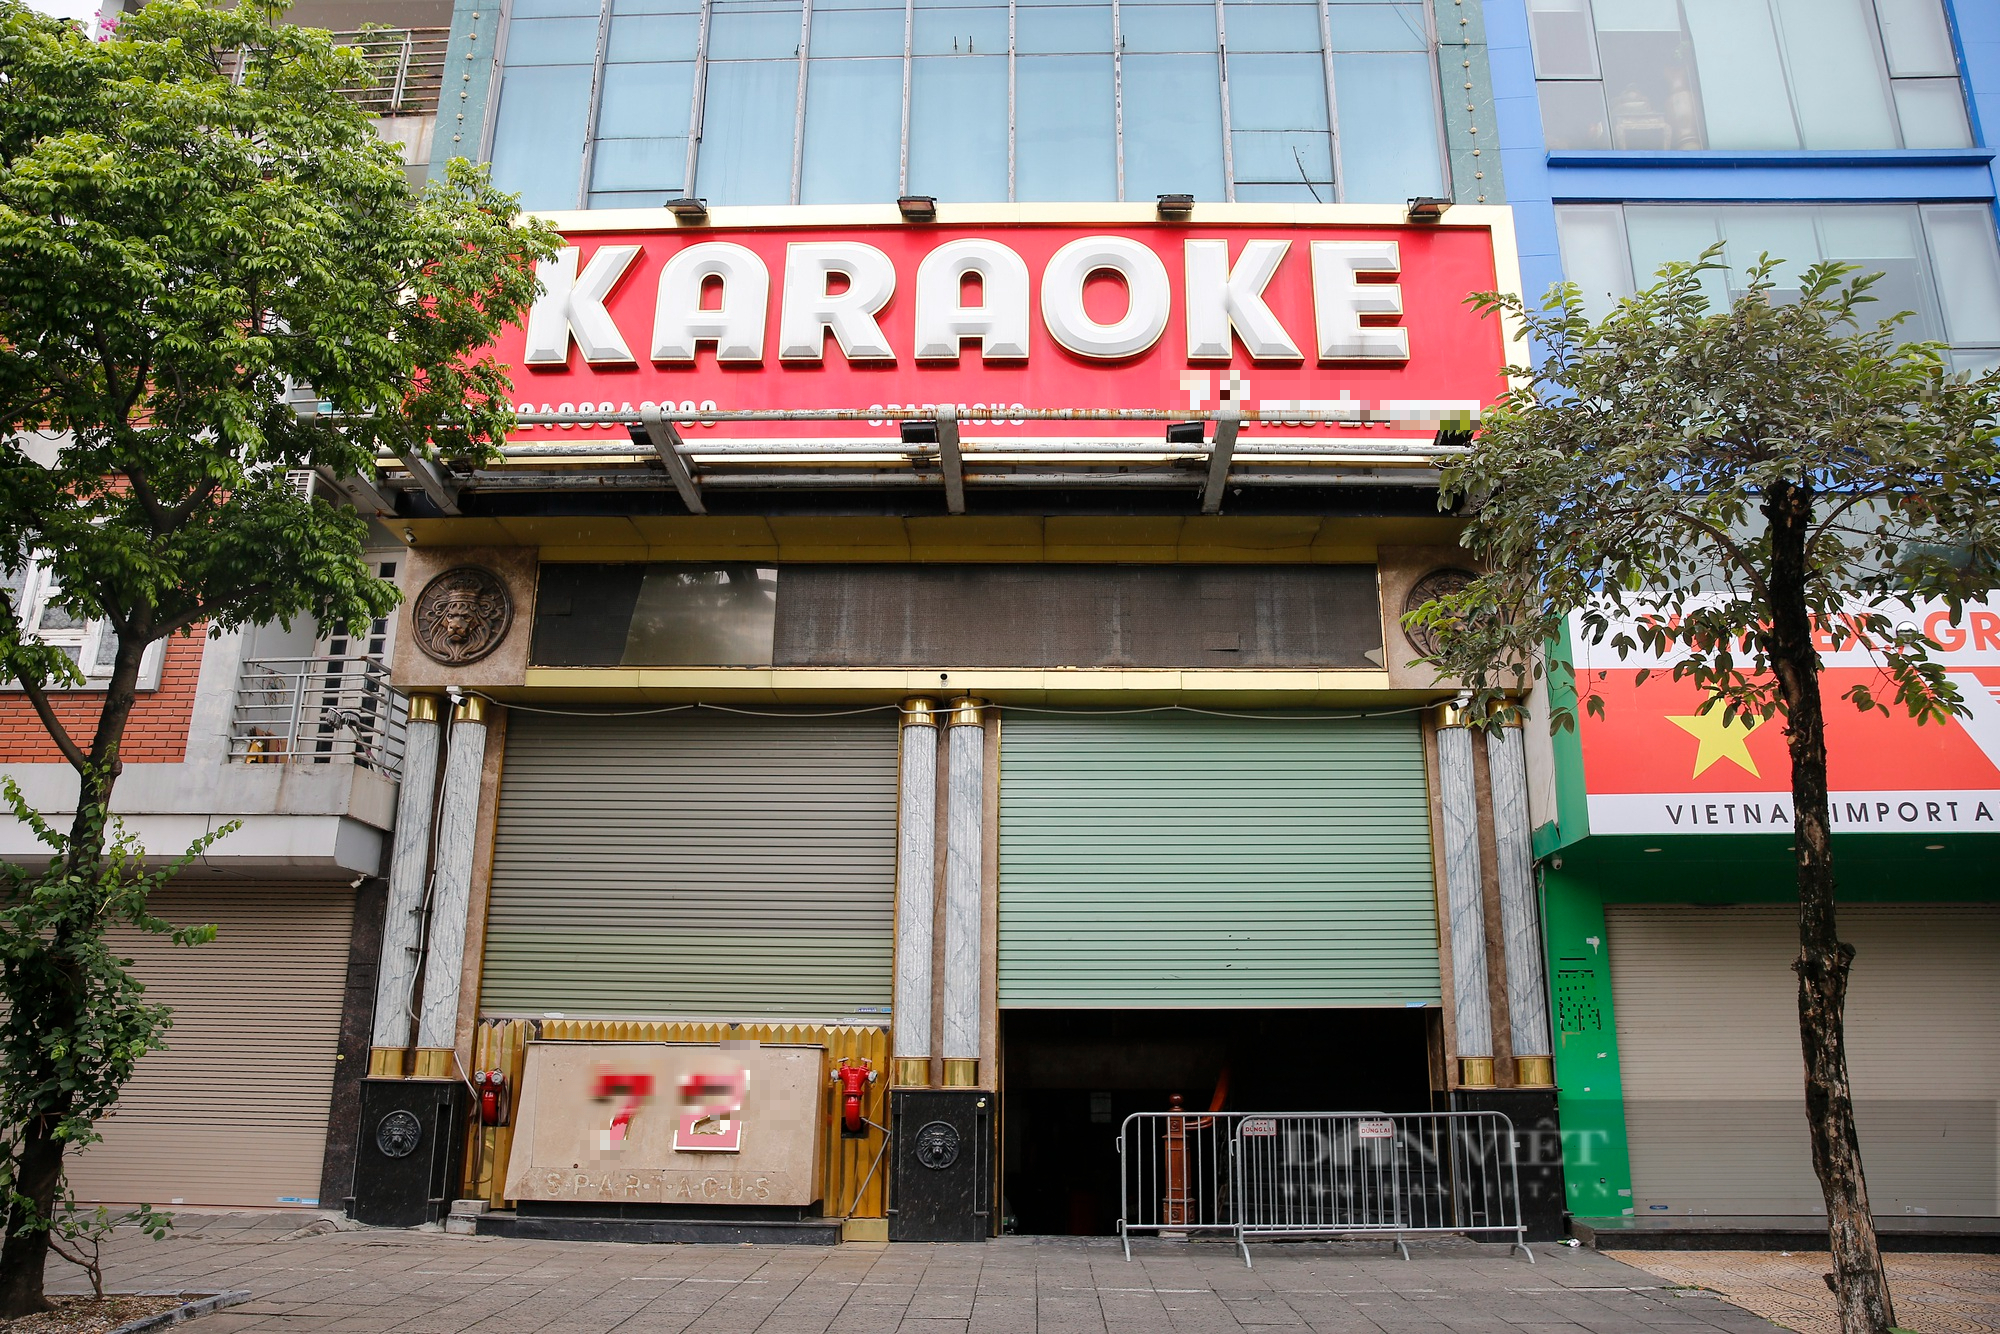 Hà Nội: Quán karaoke, vũ trường tổ chức cho khách nhảy múa thoát y có thể bị phạt đến 100 triệu đồng - Ảnh 1.